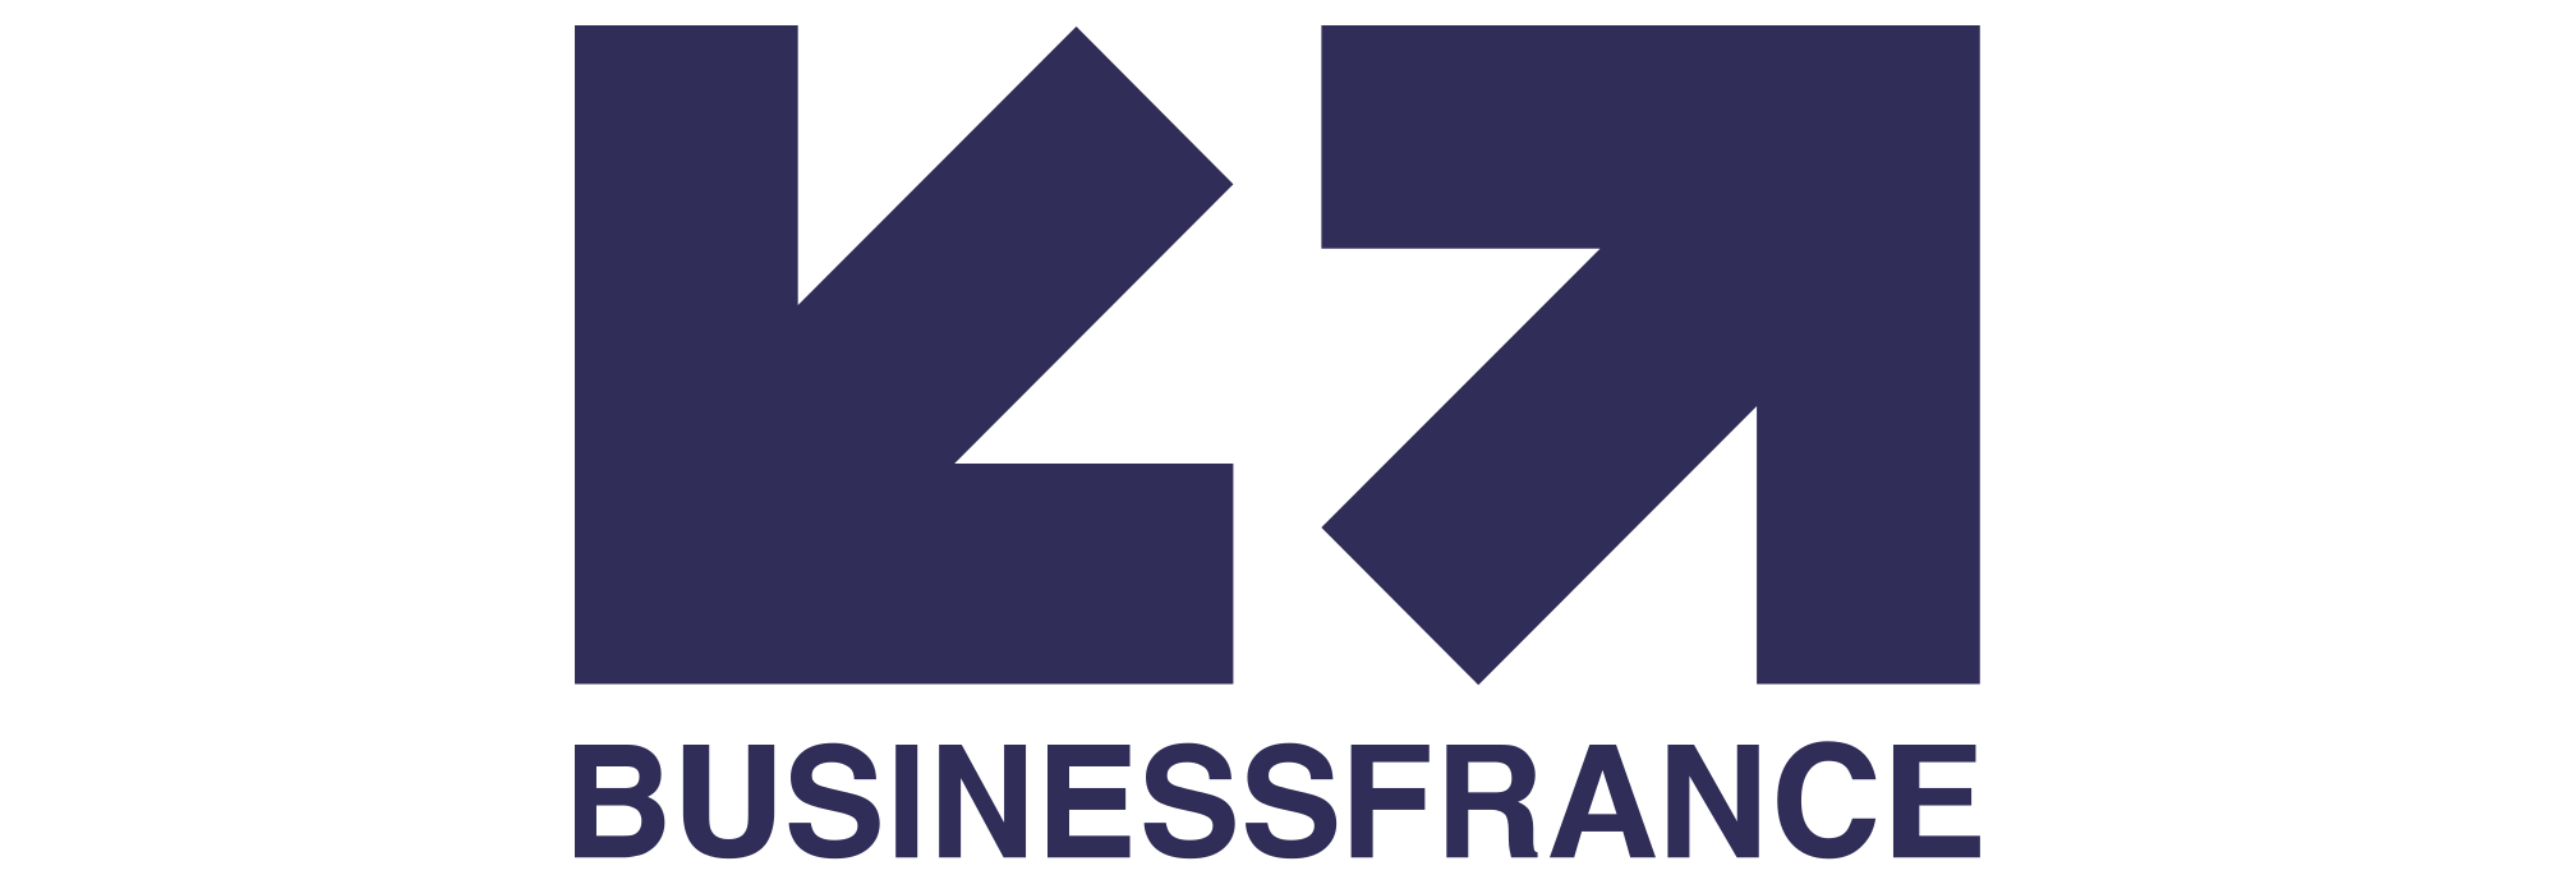 Business France logo - Tryane Analytics for internal communications